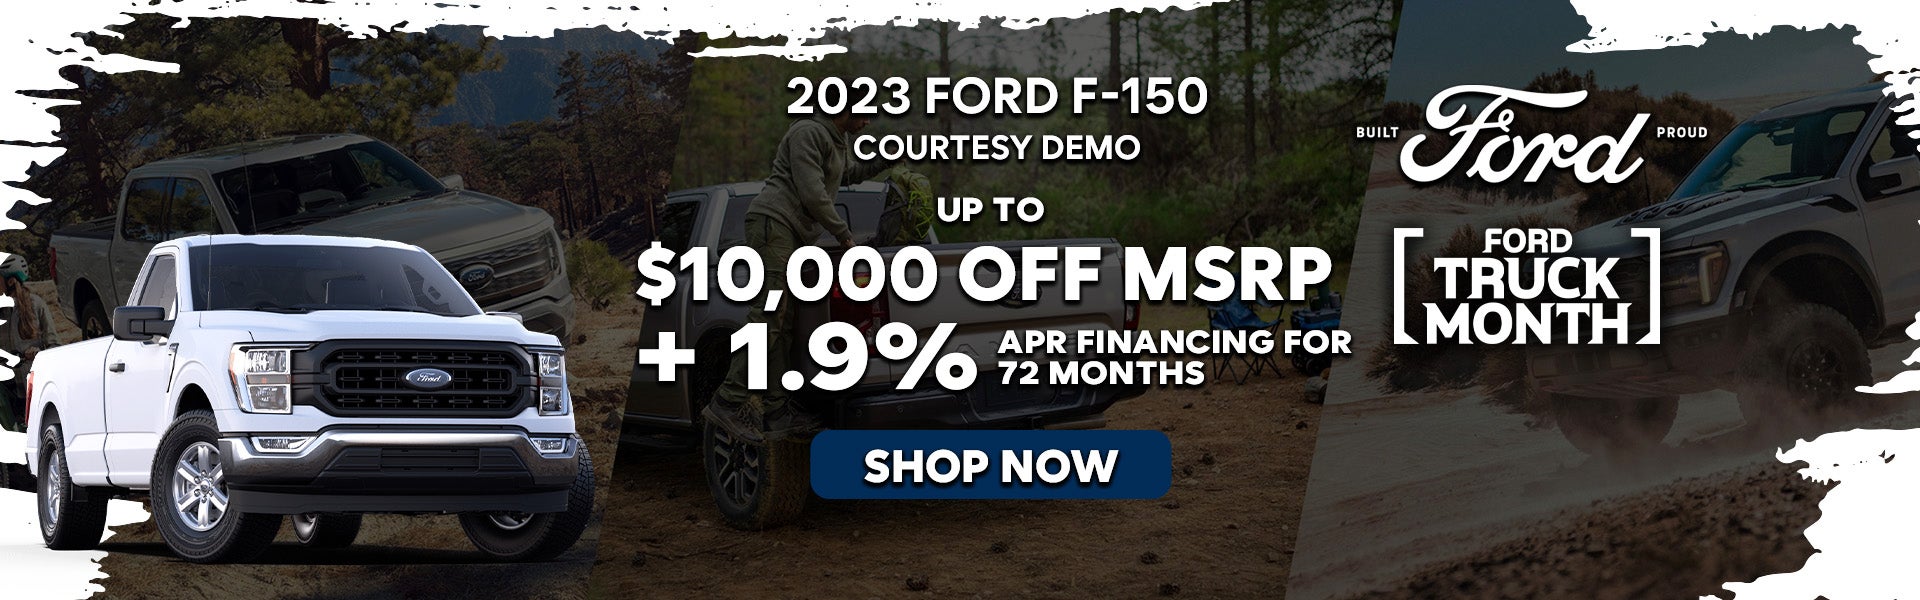 2023 Ford F-150 Courtesy Demo